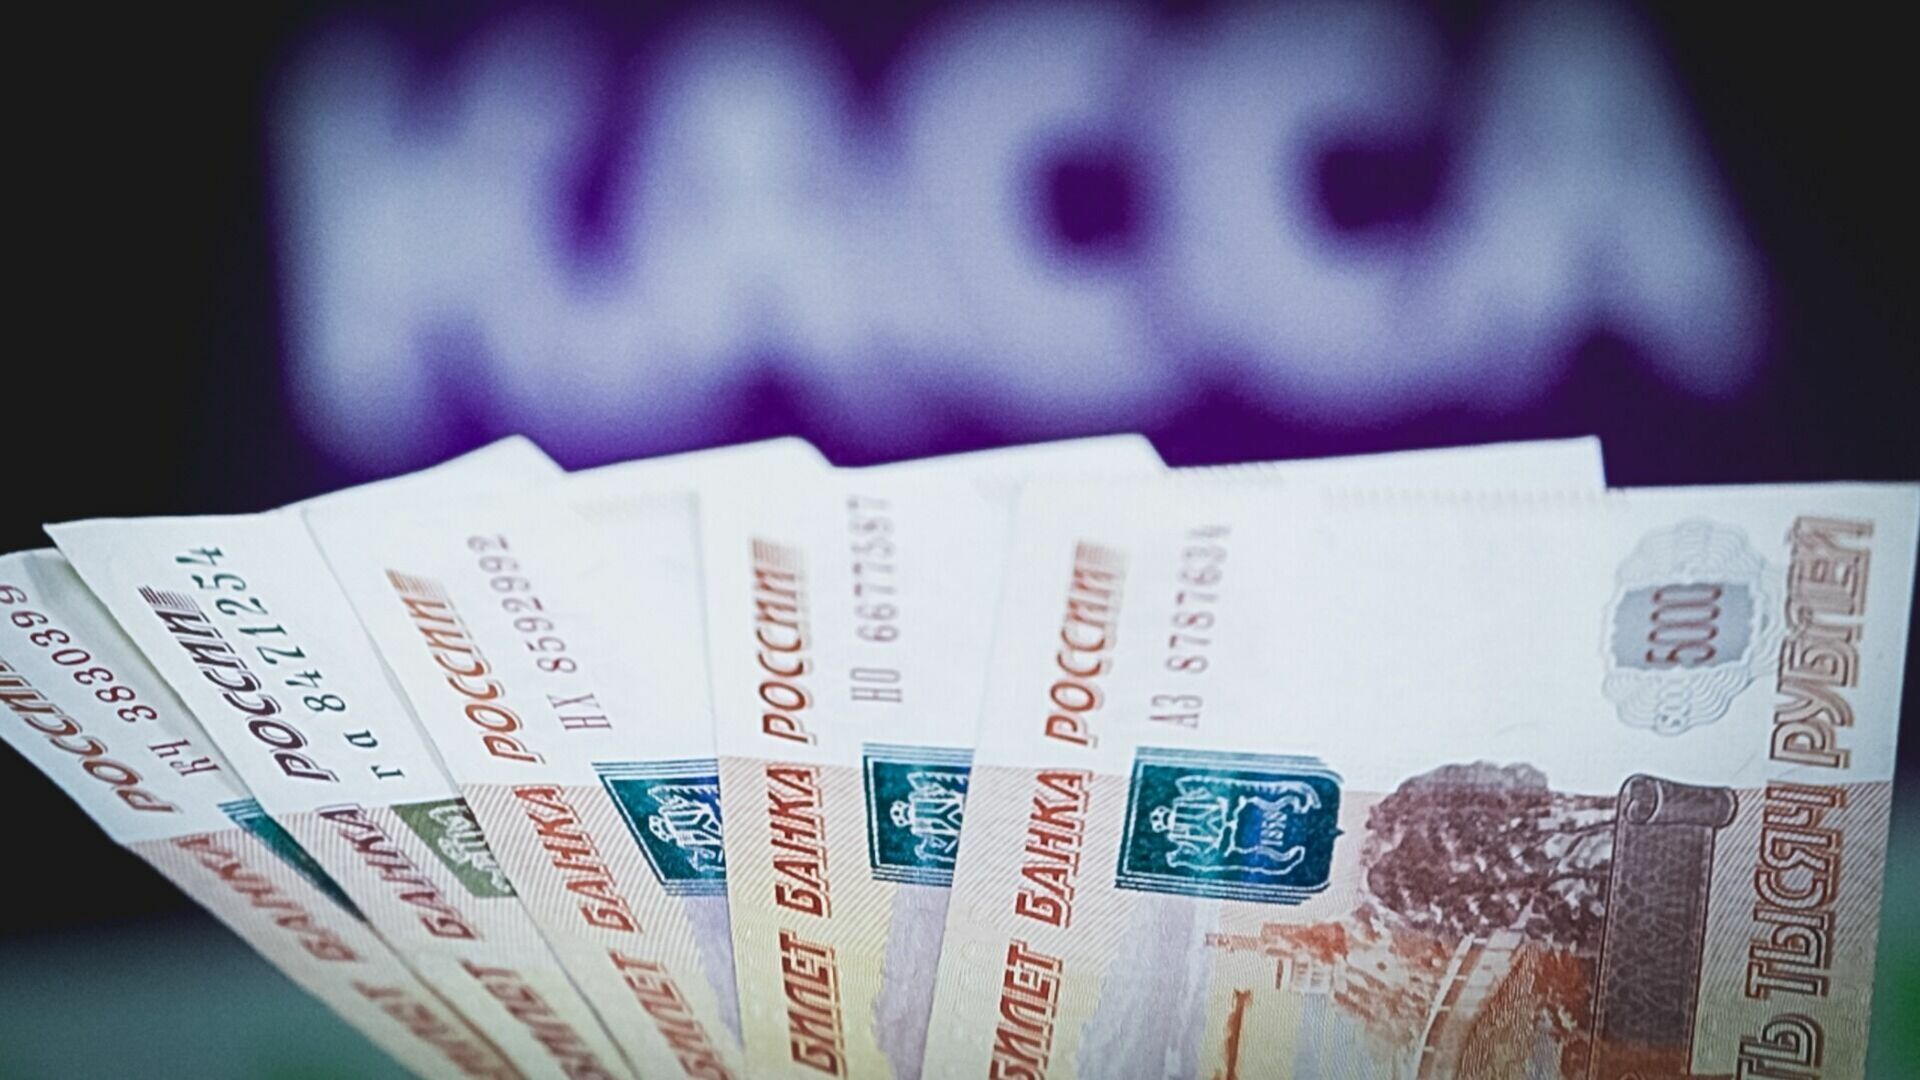 Бухгалтер Госветуправления в Арзамасе украла миллион рублей с работы из-за долгов